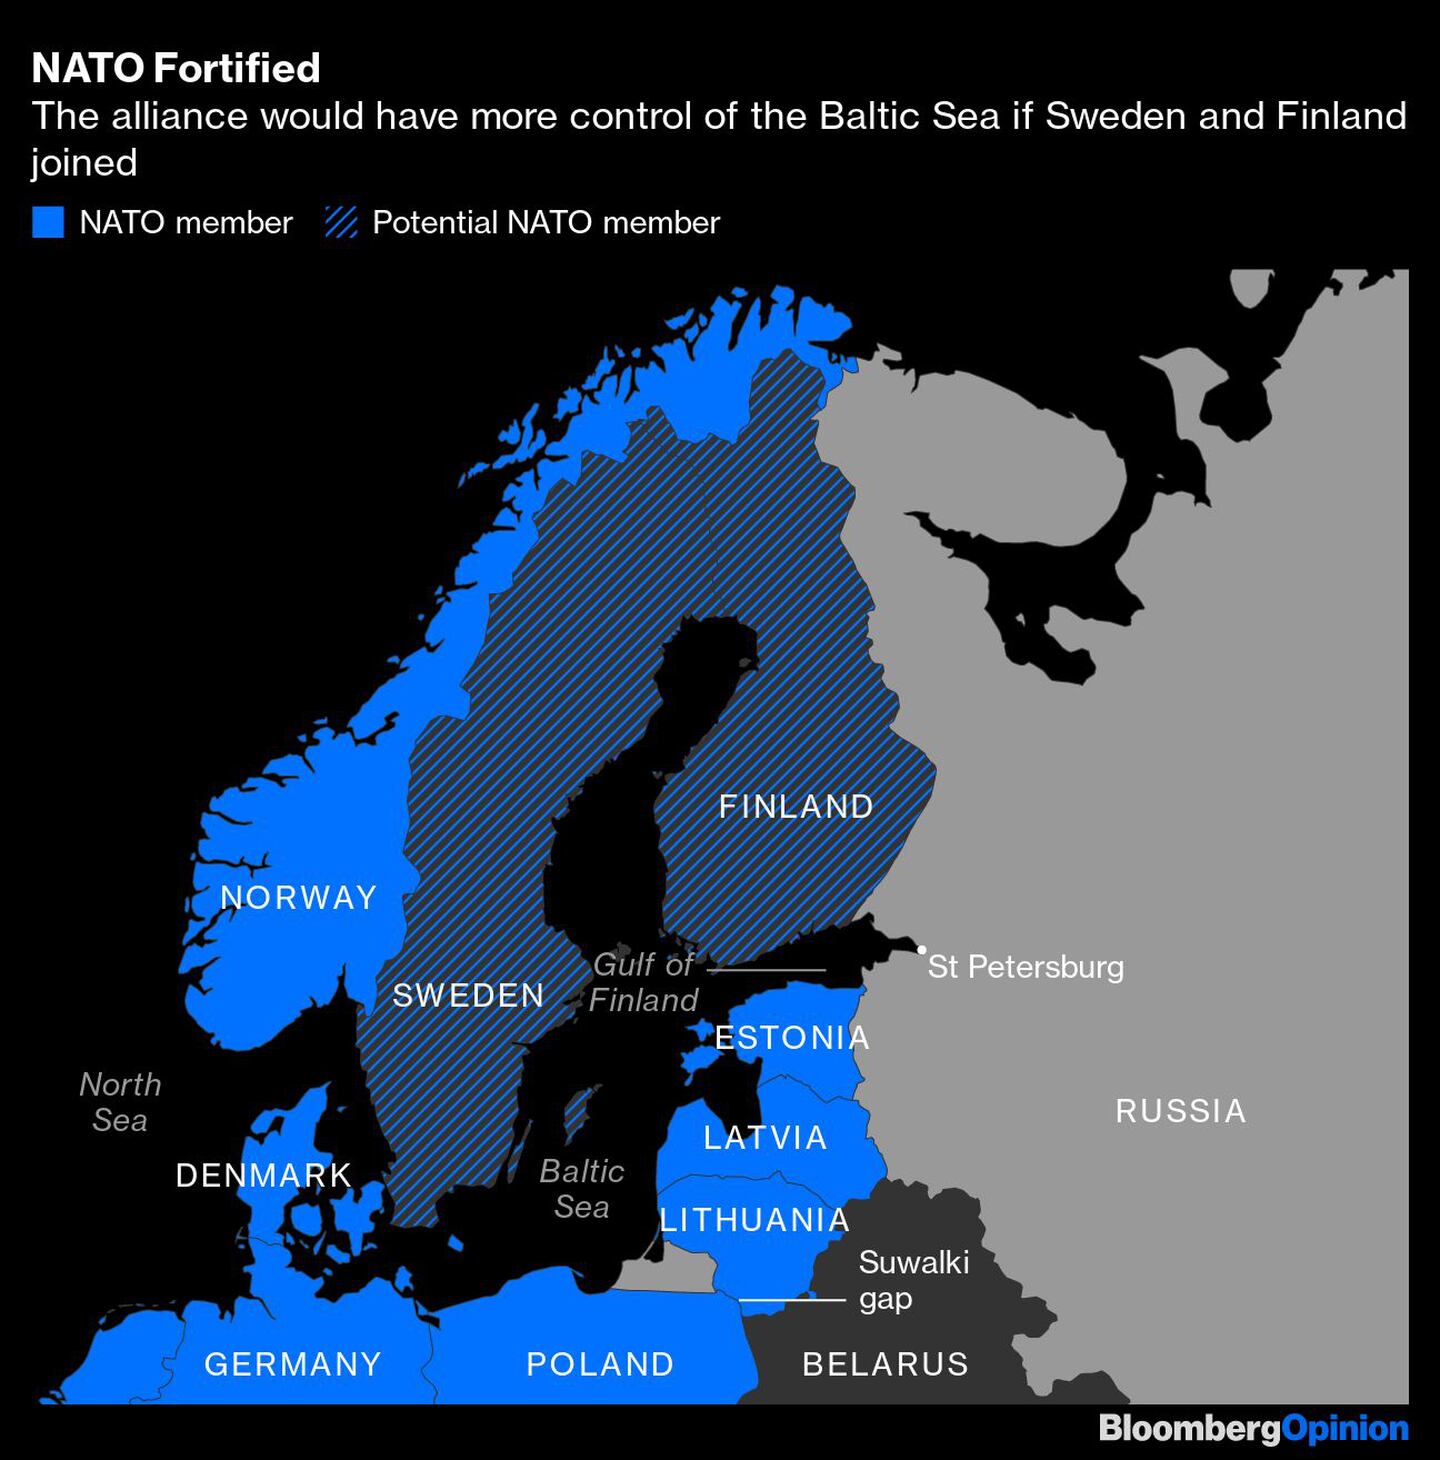 En rayado: potencial miembro de la OTAN
En azul: miembro de la OTANdfd